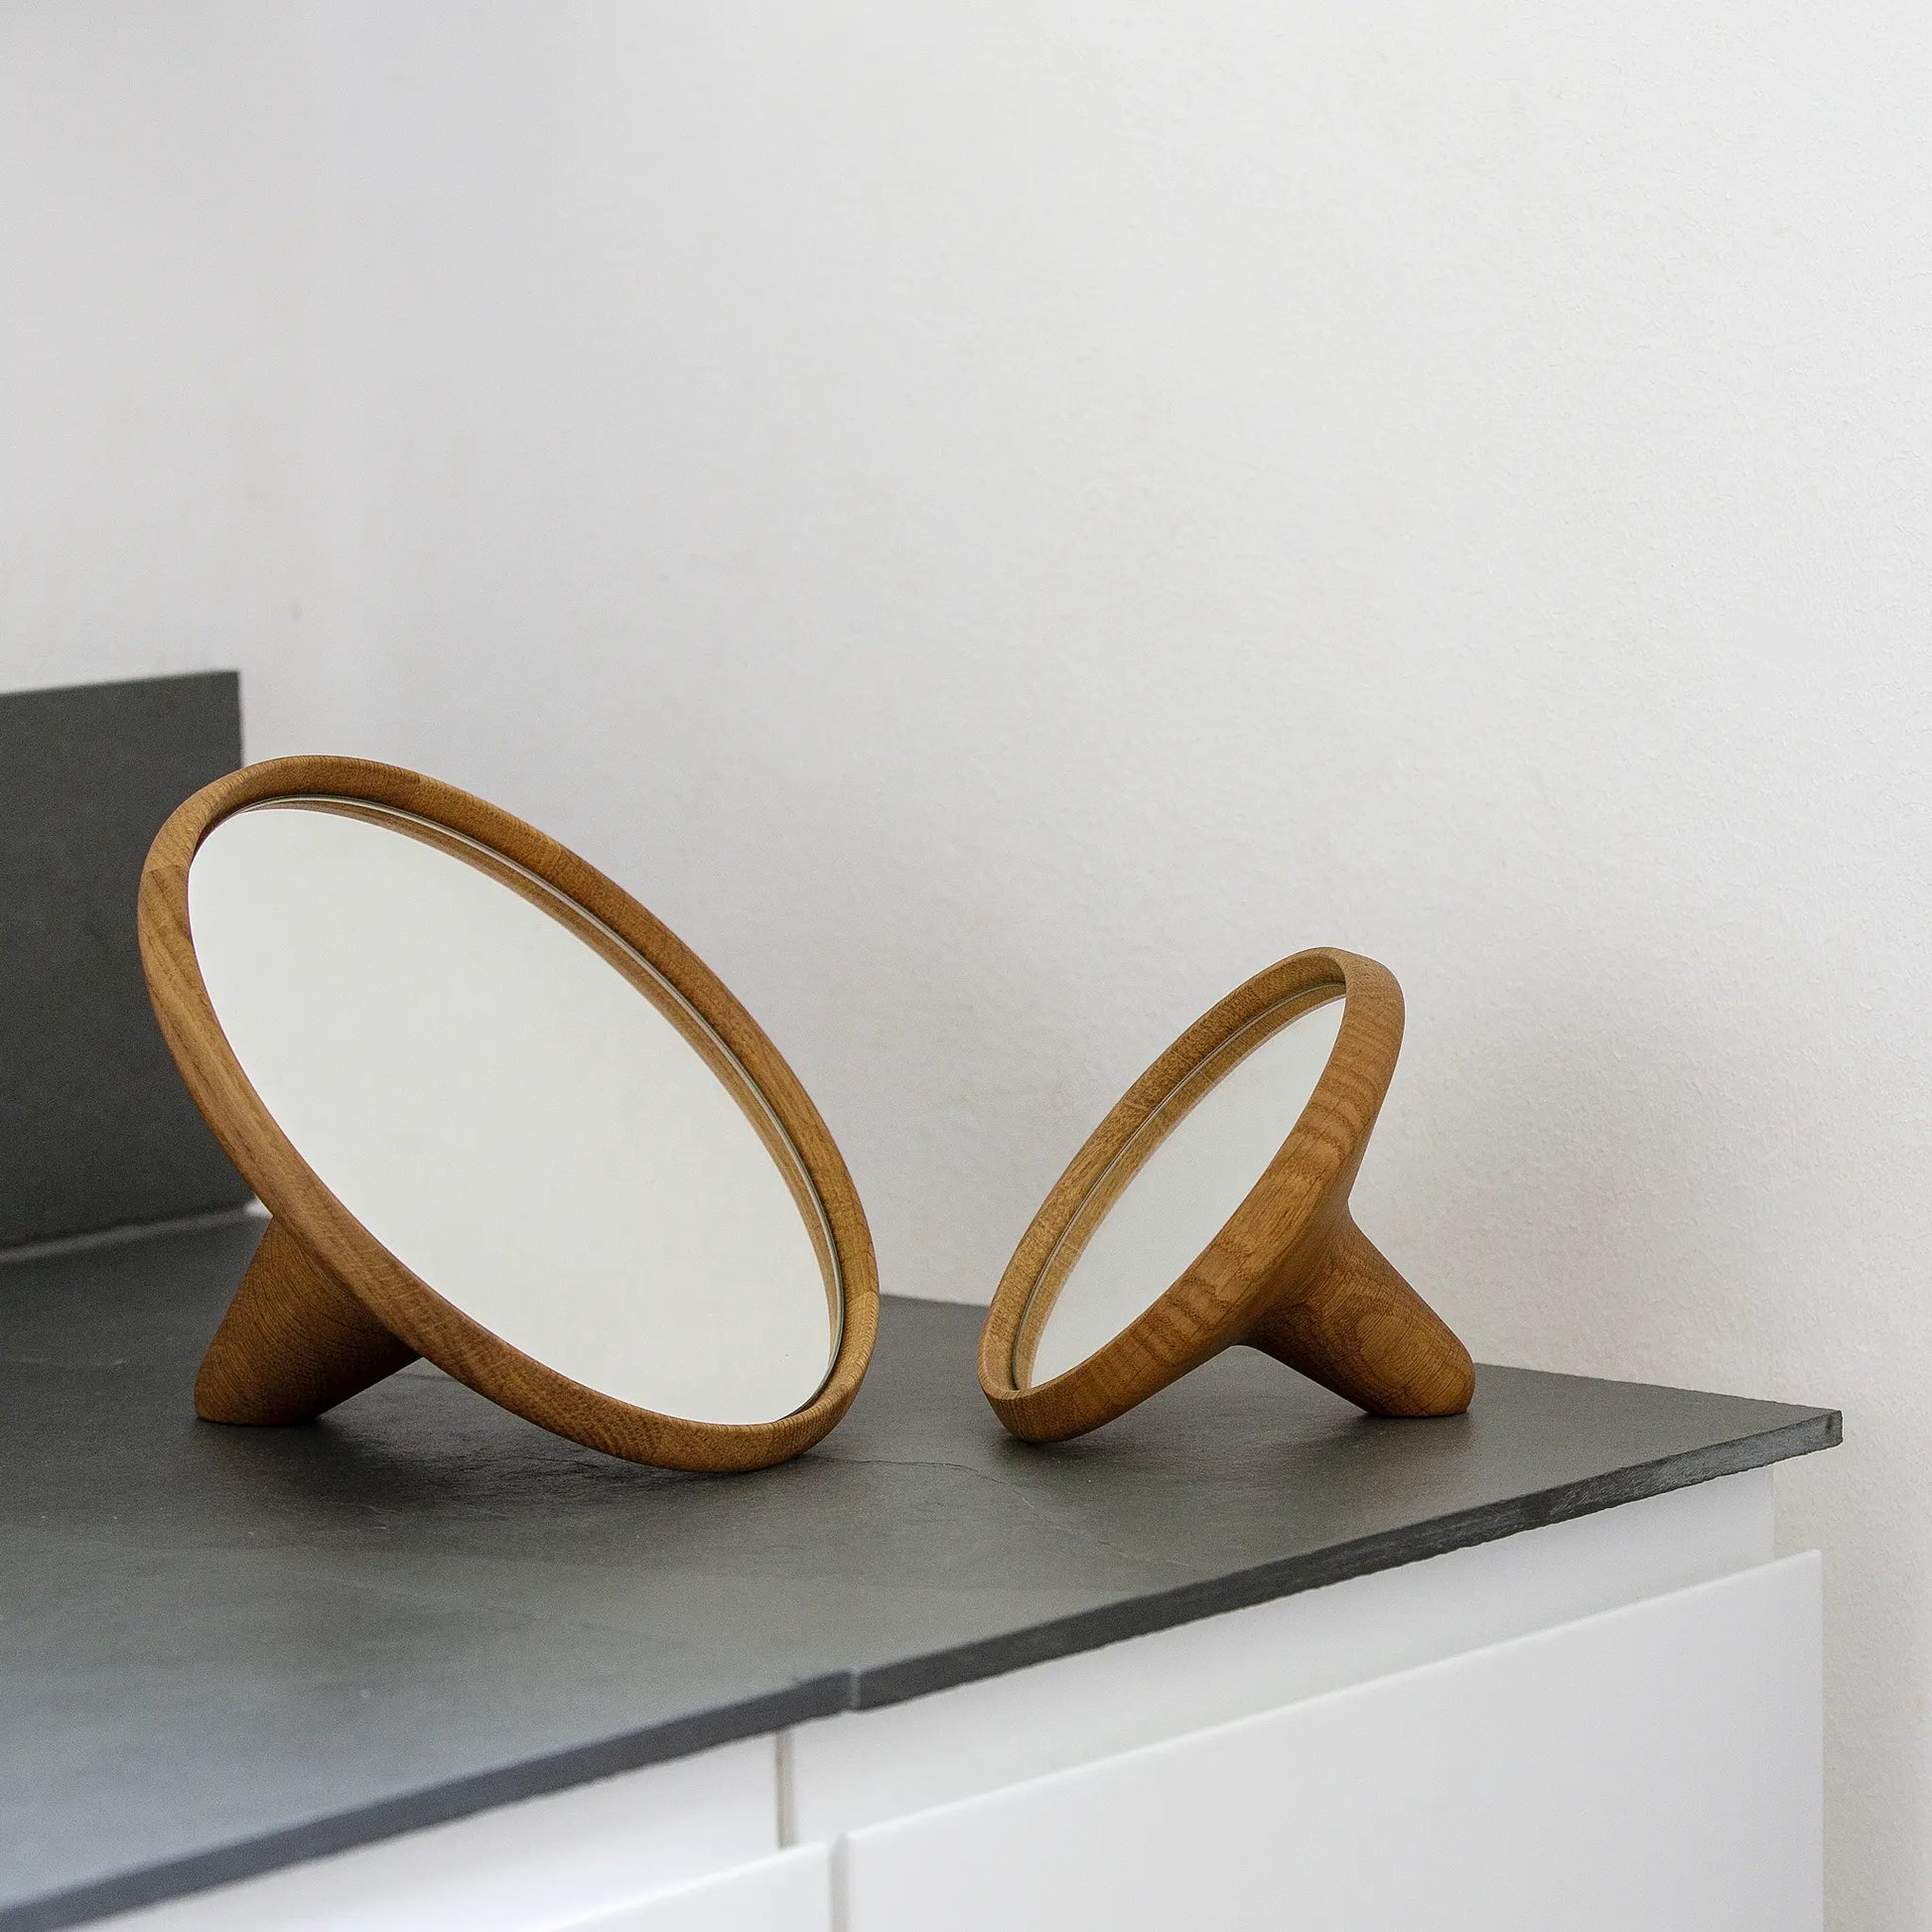 Satellite Mirror speglar i ekträ på en grå bänk i badrummet